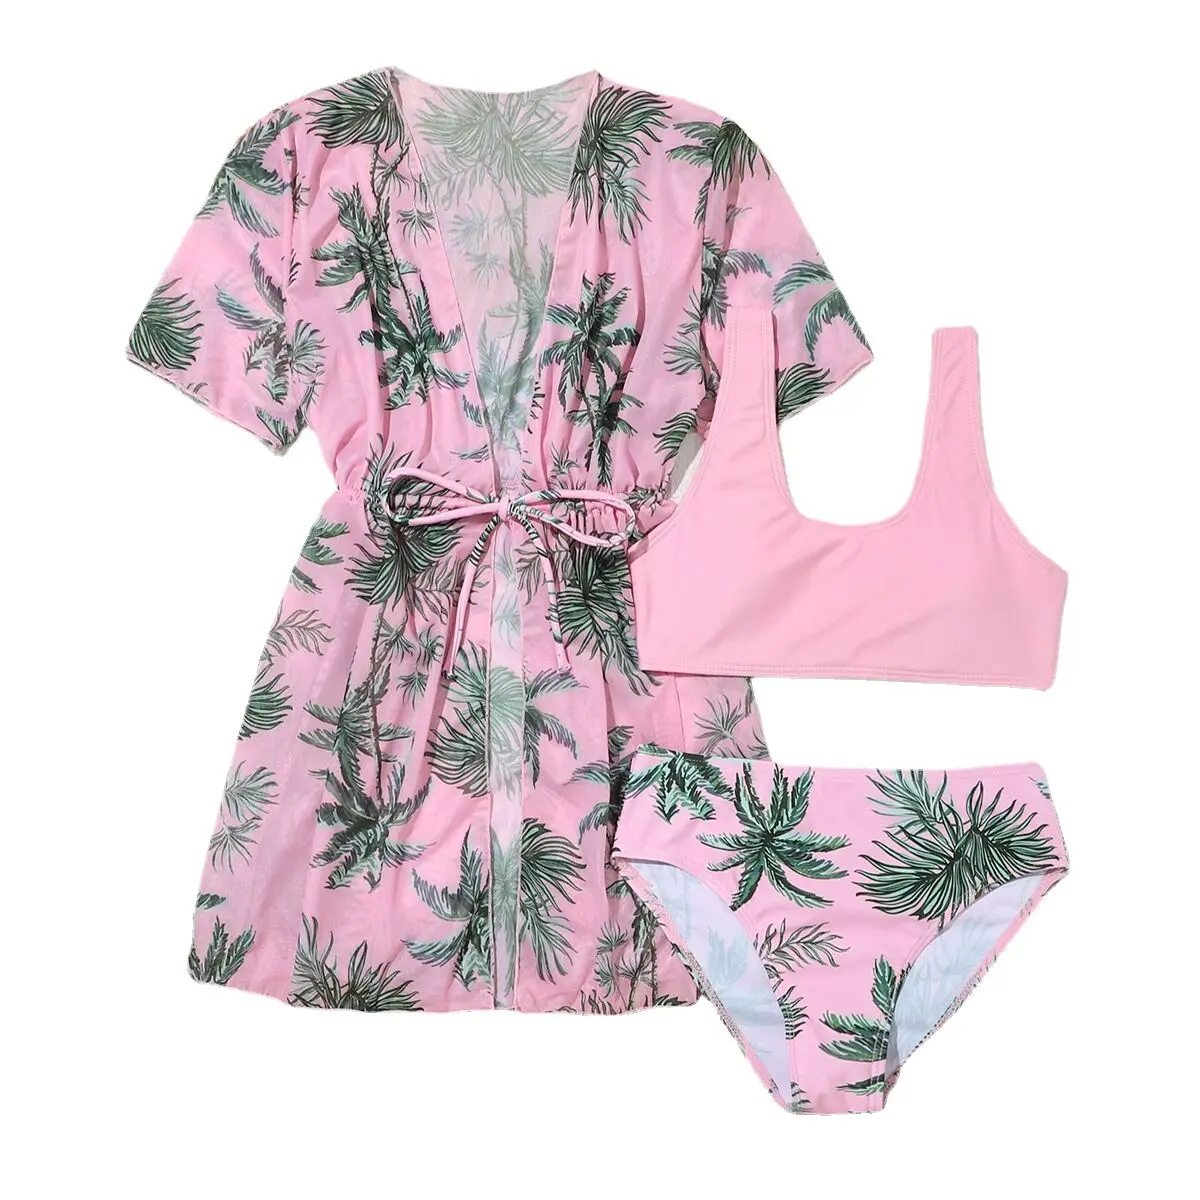 Girls 3pack Tropical Pleated Bikini Swimsuit with Mesh Cover Up 7-14 Years Children's Swimwear Kimono Swimming Suit Beachwear